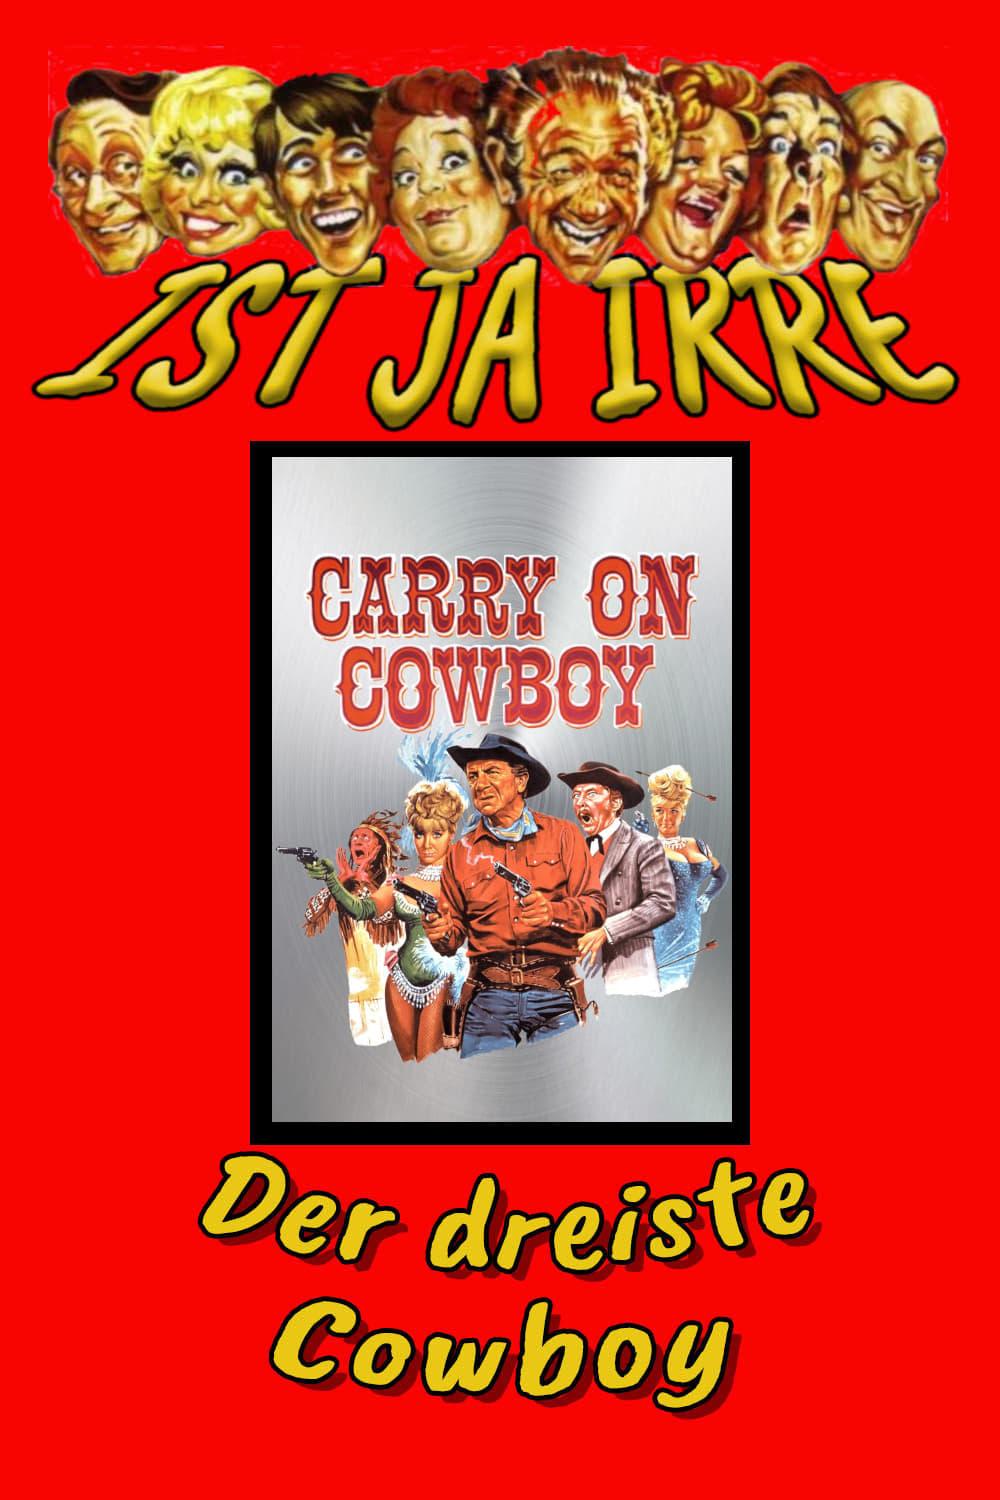 Ist ja Irre - Der dreiste Cowboy poster